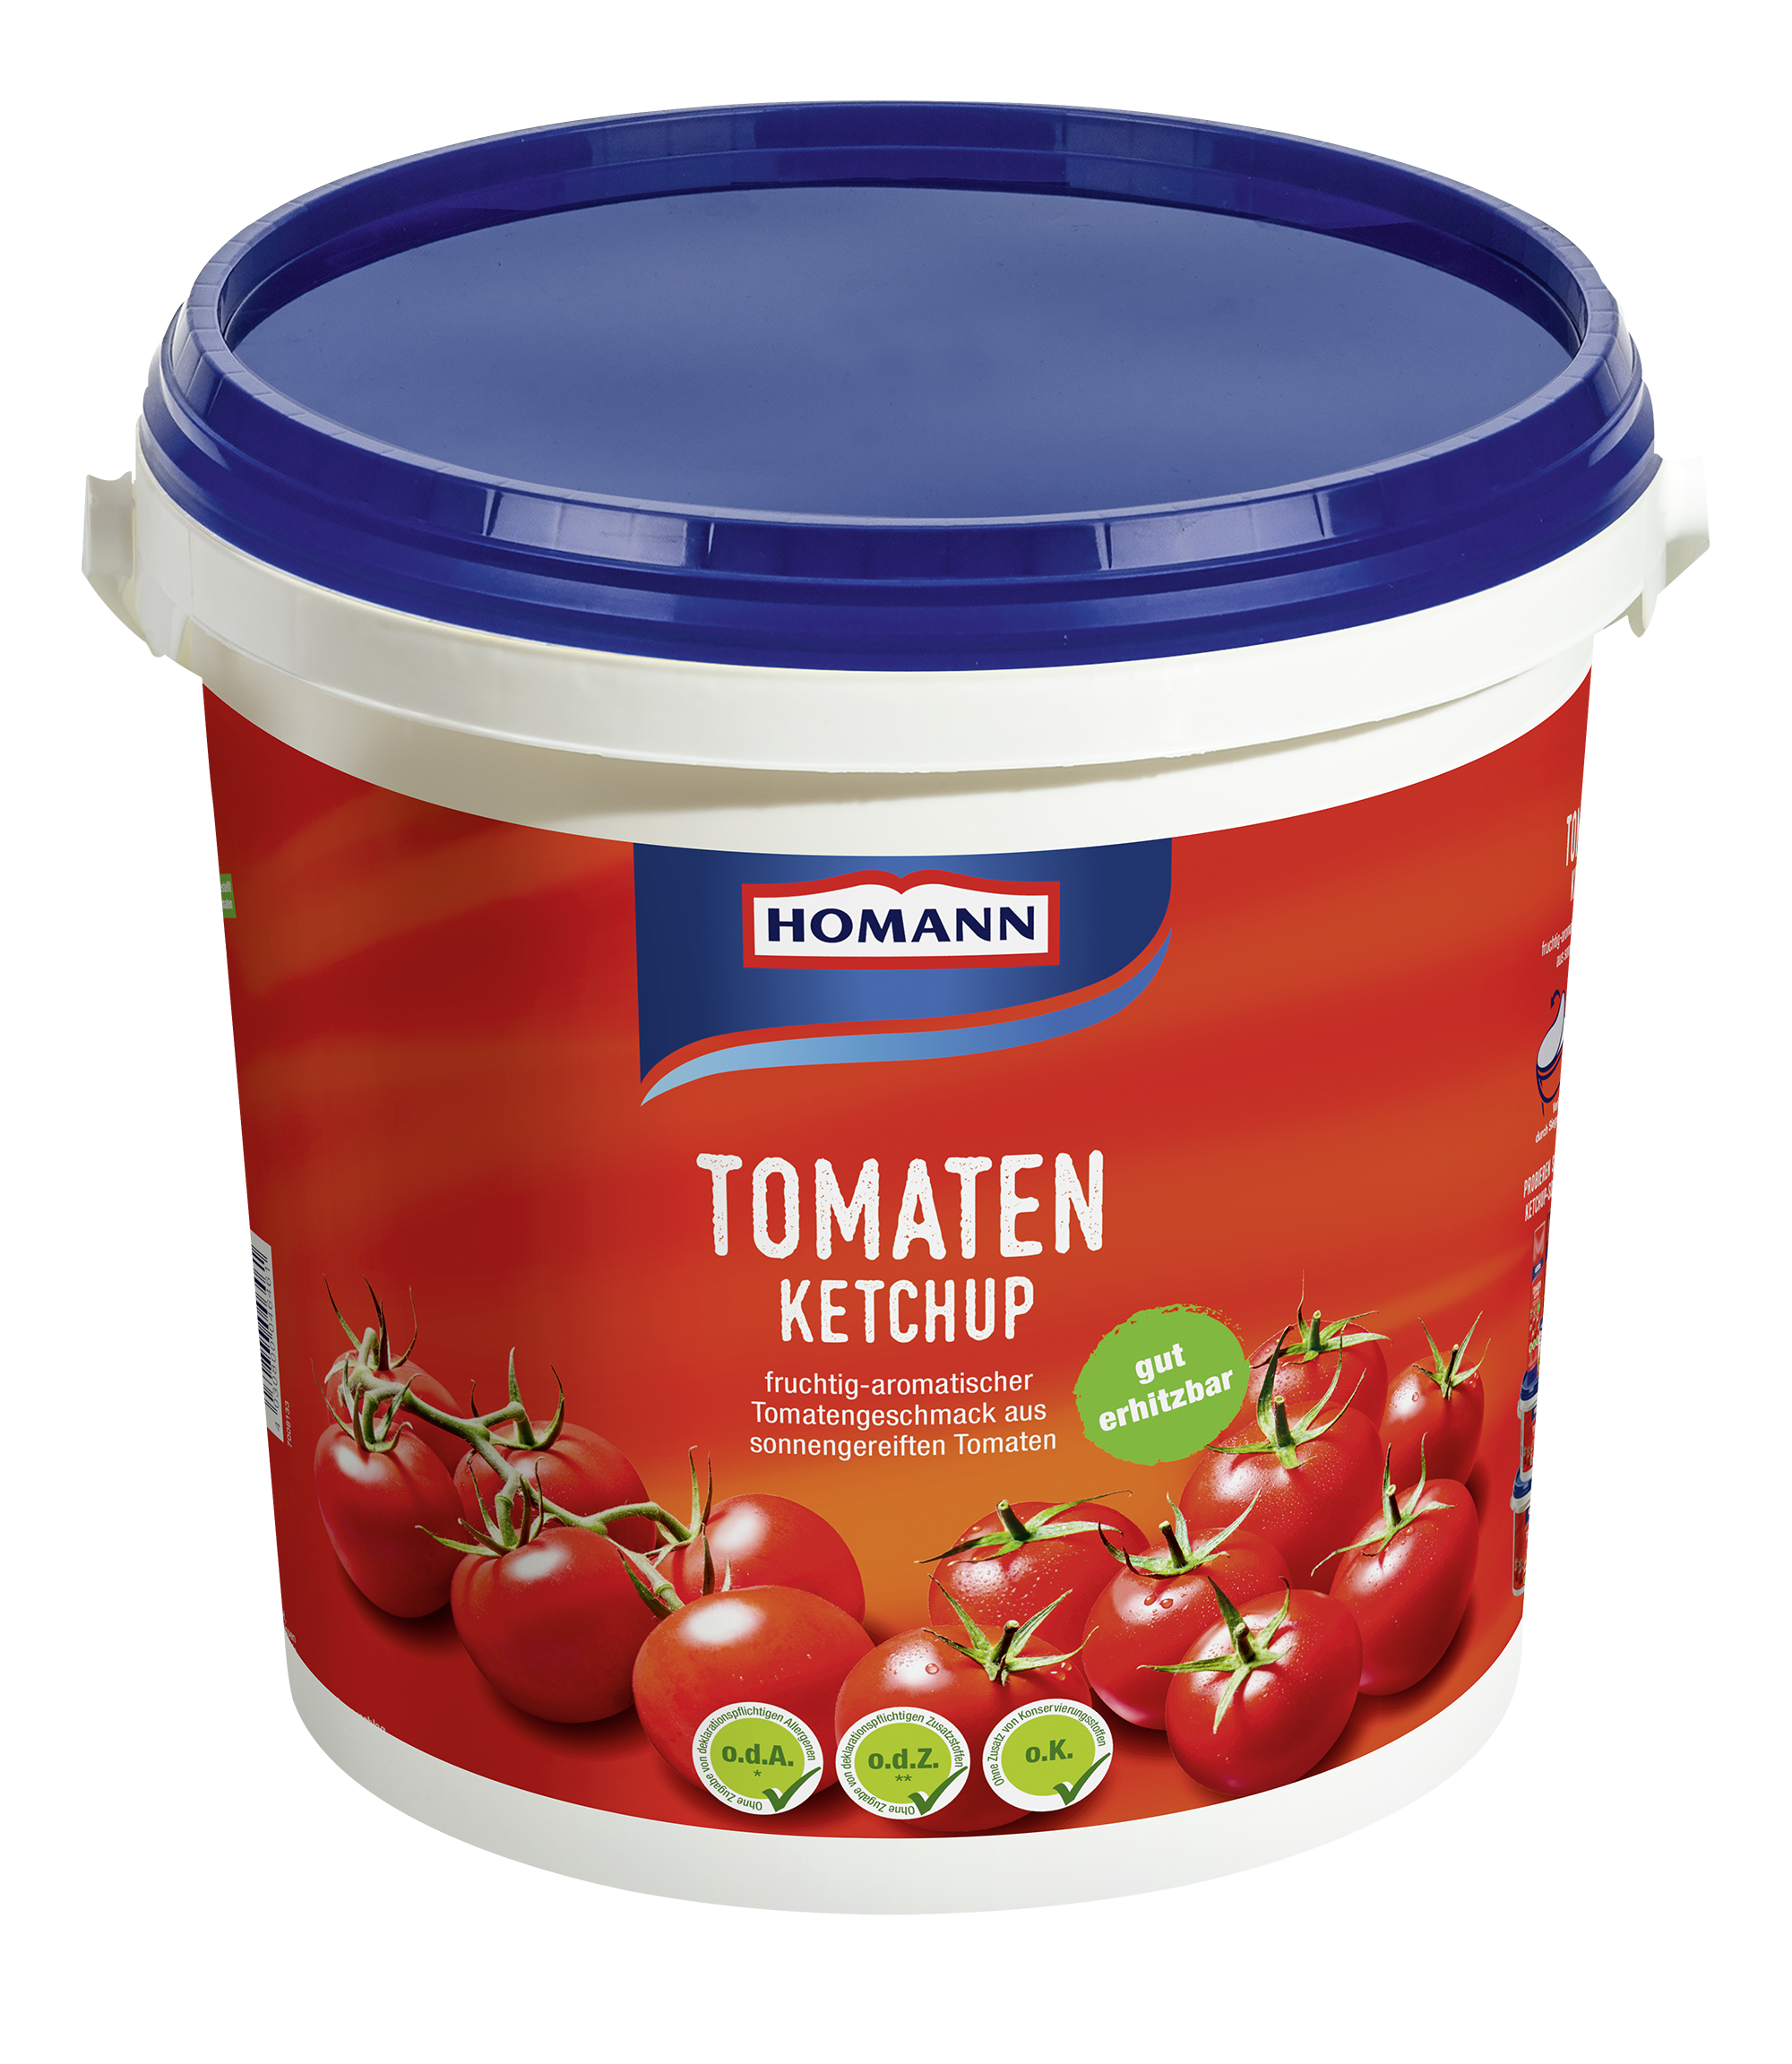 HOMANN Tomaten Ketchup 10 kg